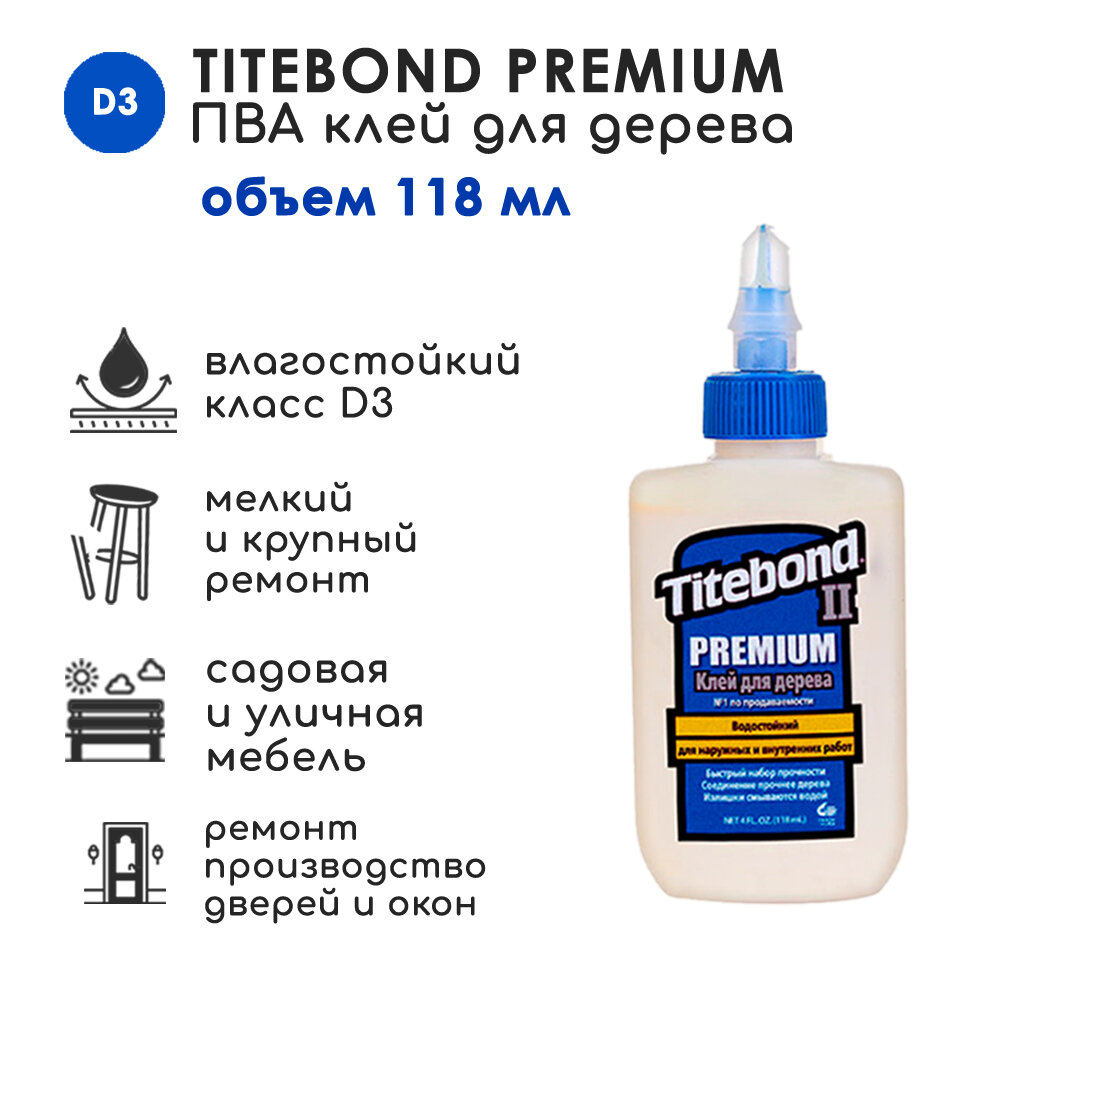      Titebond II Premium D3, 118 